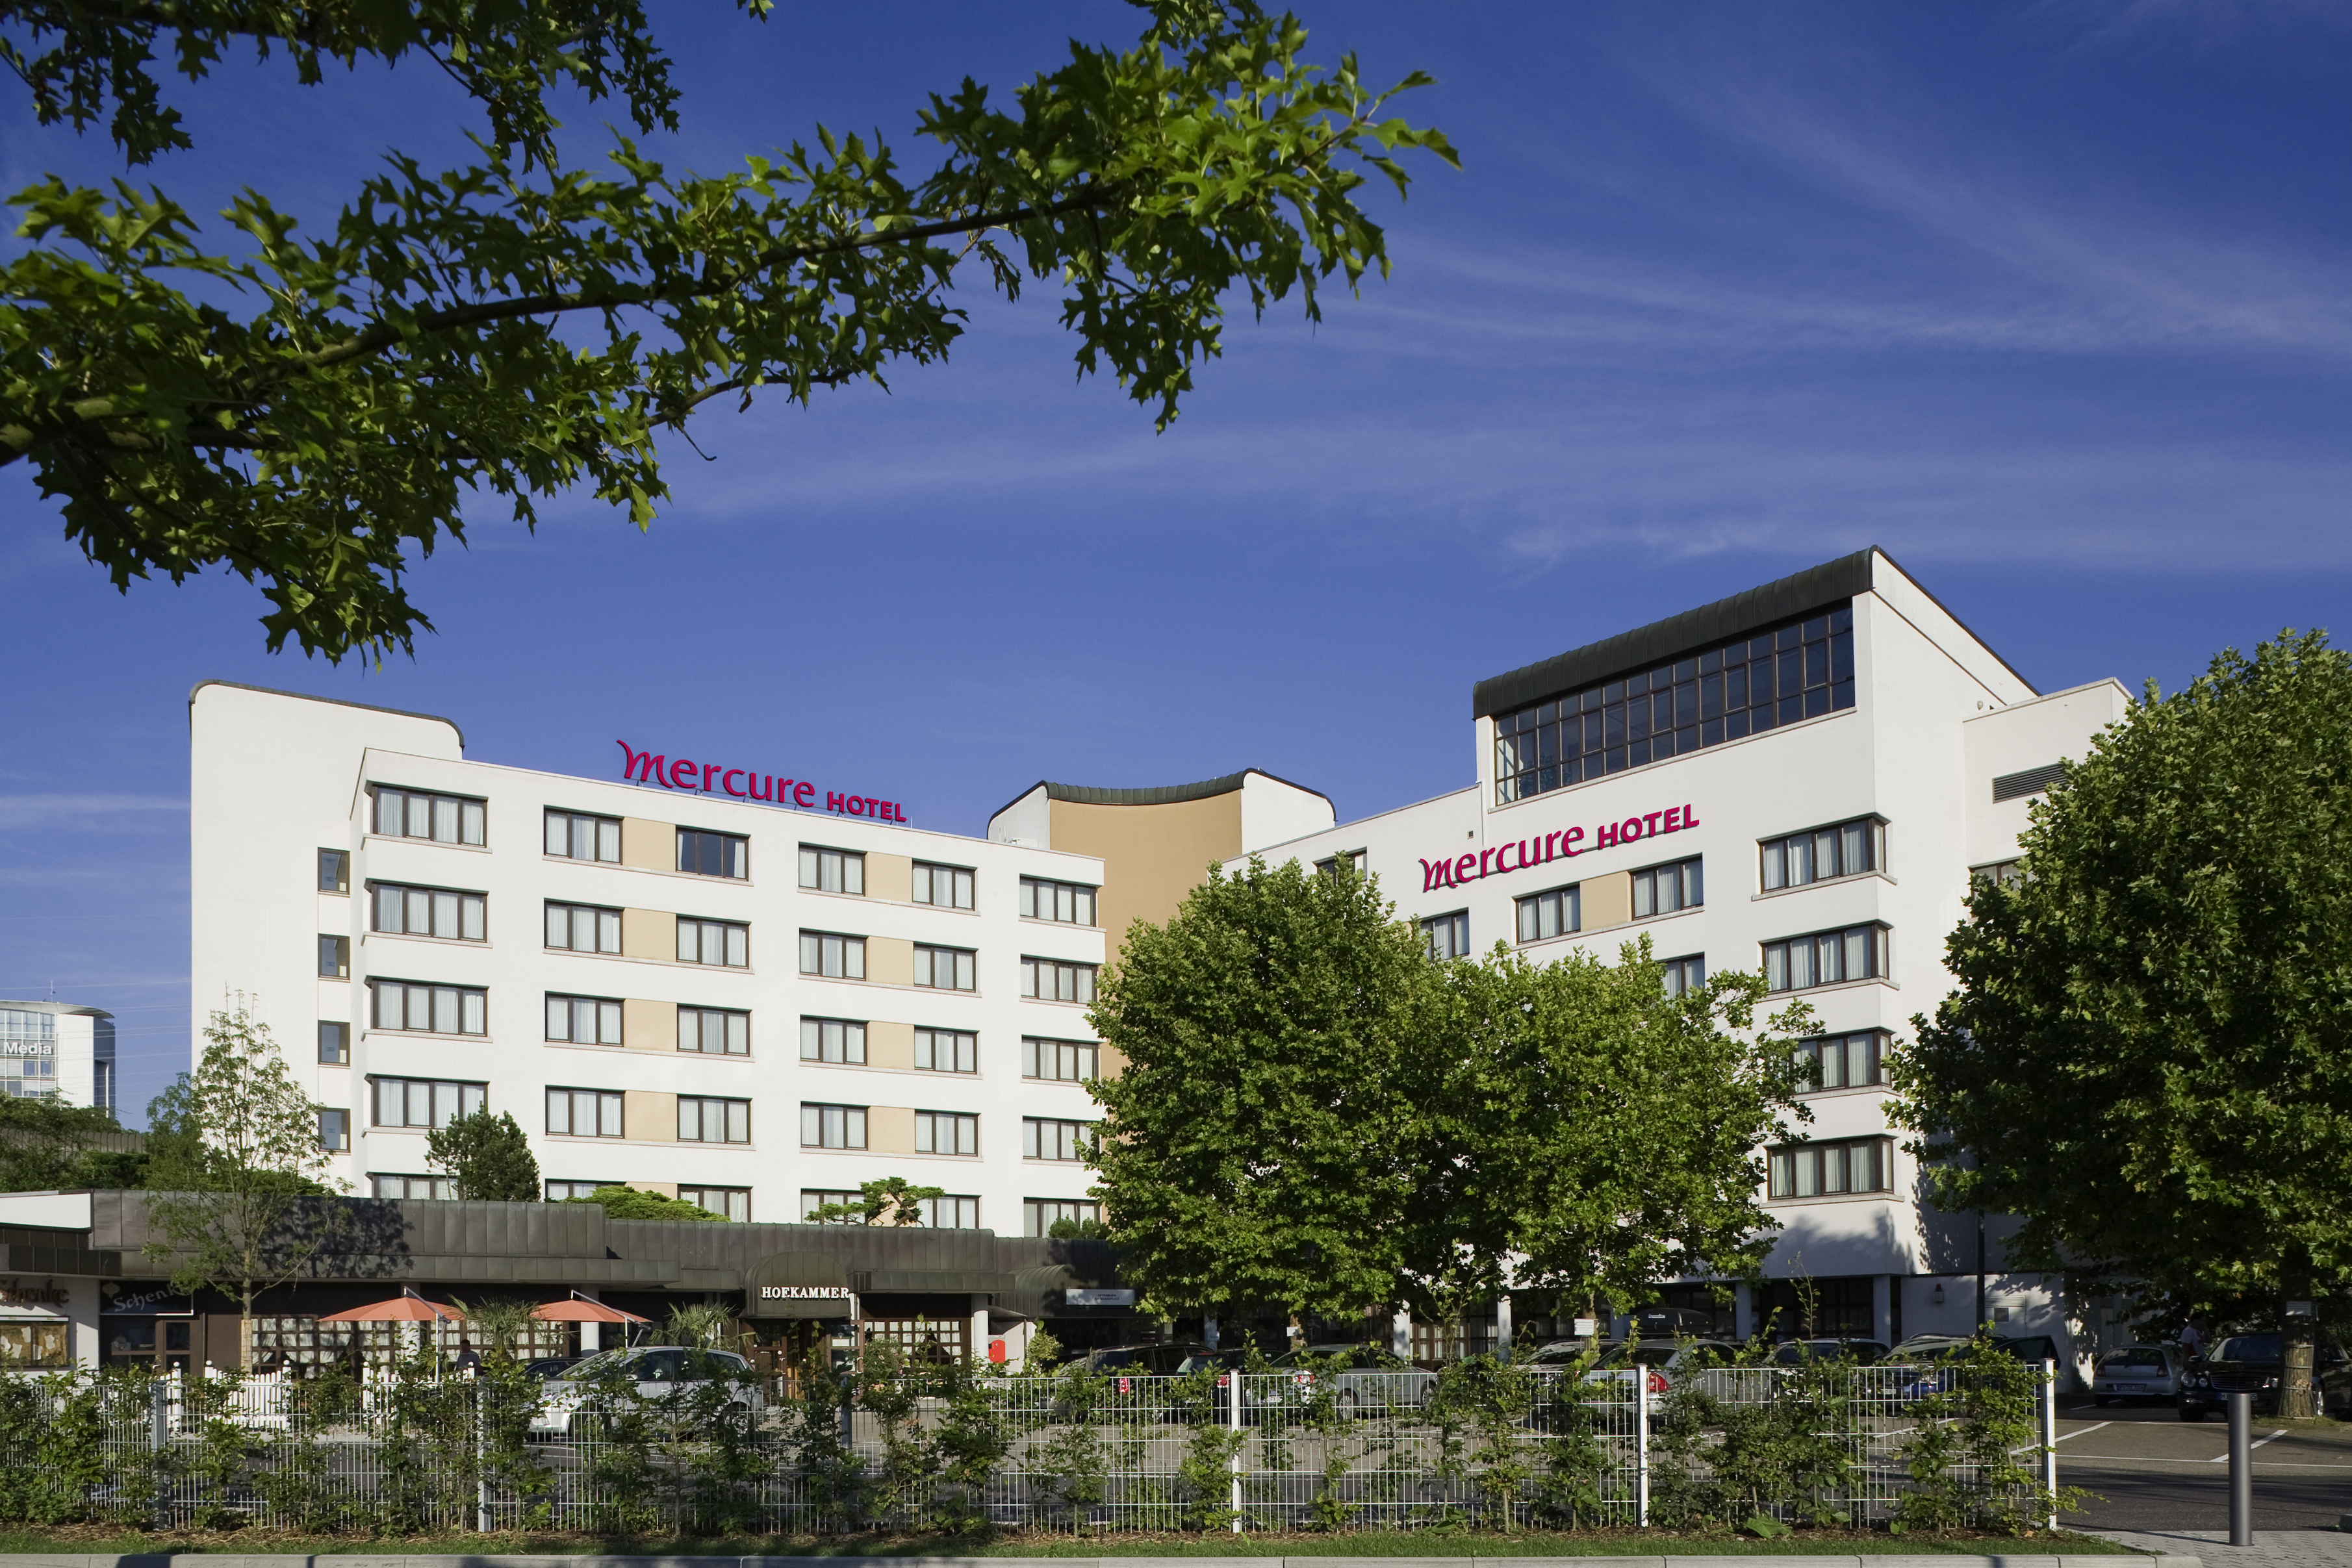 Mercure Hotel Offenburg am Messeplatz in Offenburg bei Lautenbach